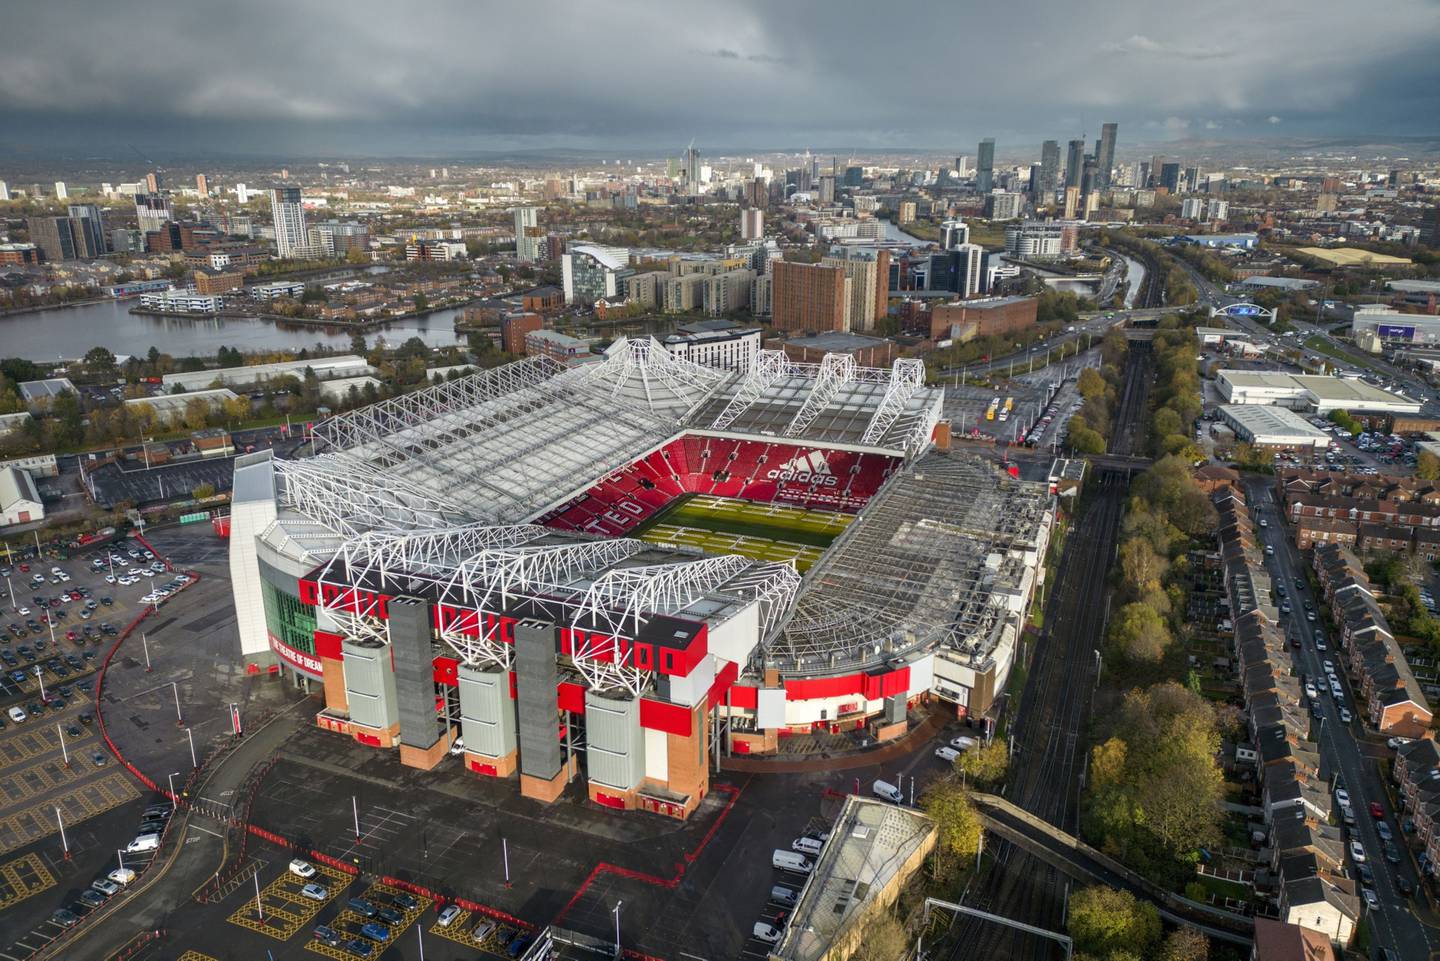 Vista aérea de Old Trafford Stadium, la casa del Manchester United FC.